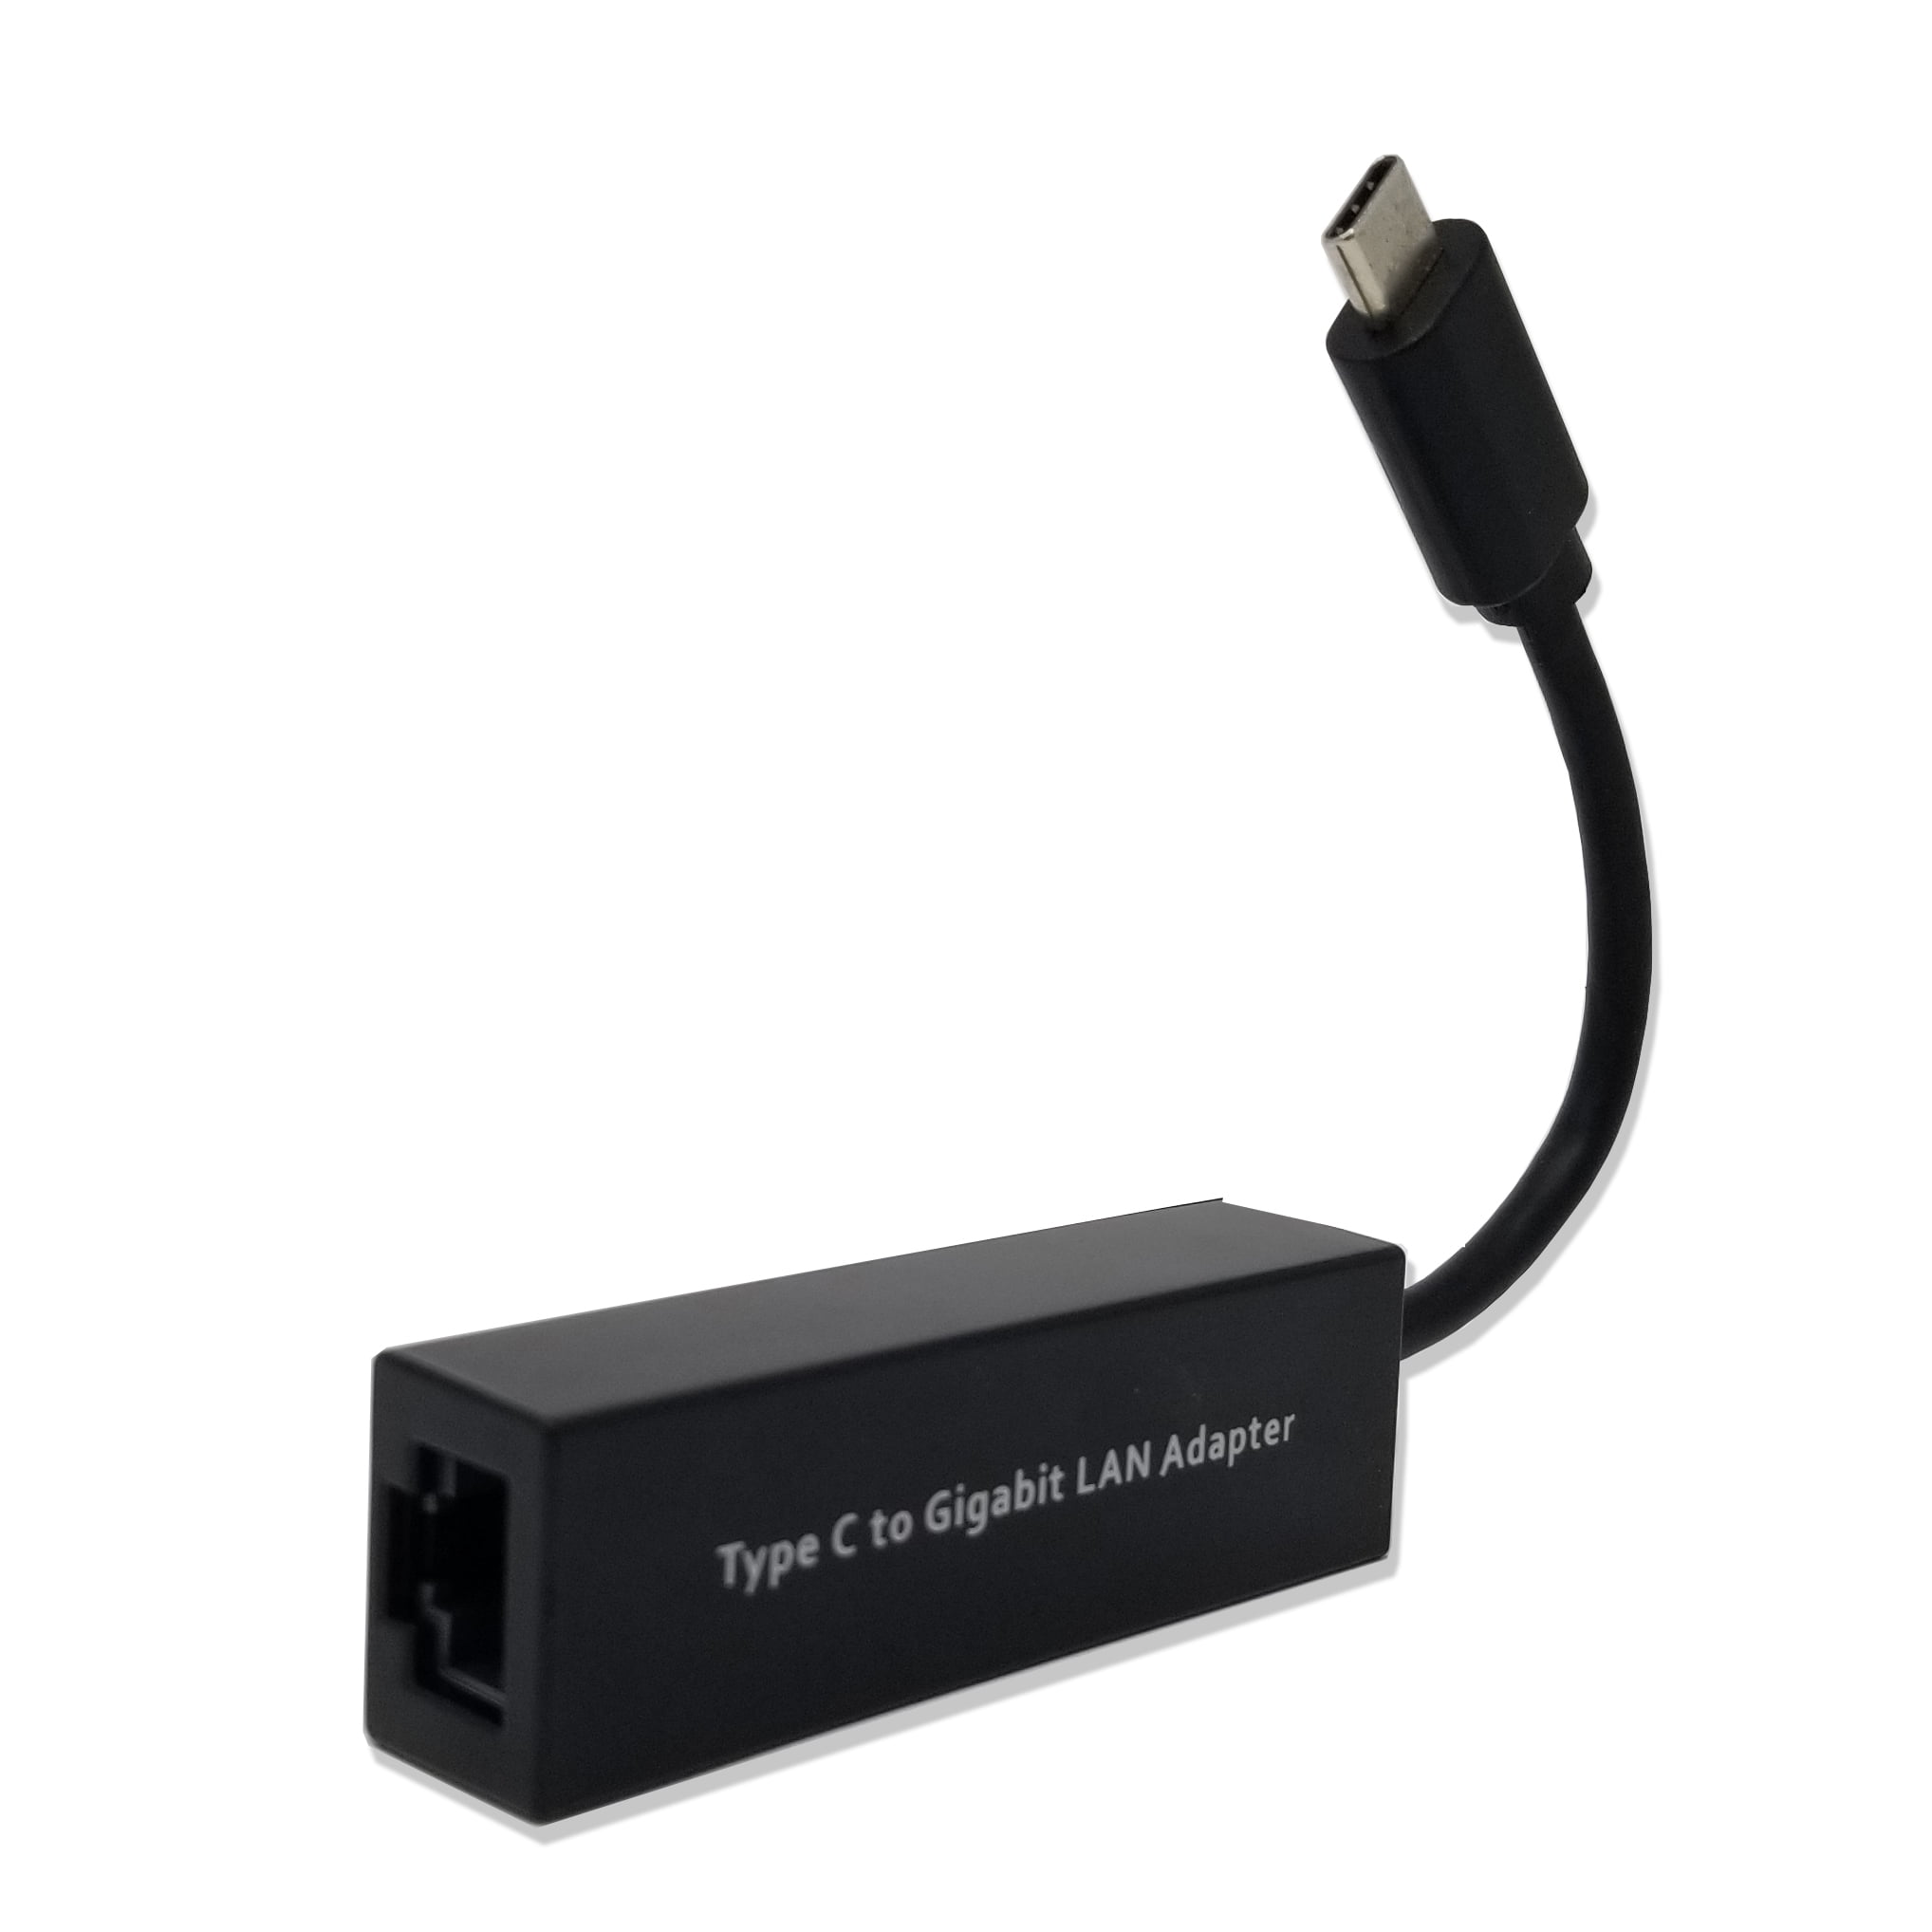 ® Adaptateur USB C 3.1 vers RJ45 Gigabit Ethernet (Argenté)